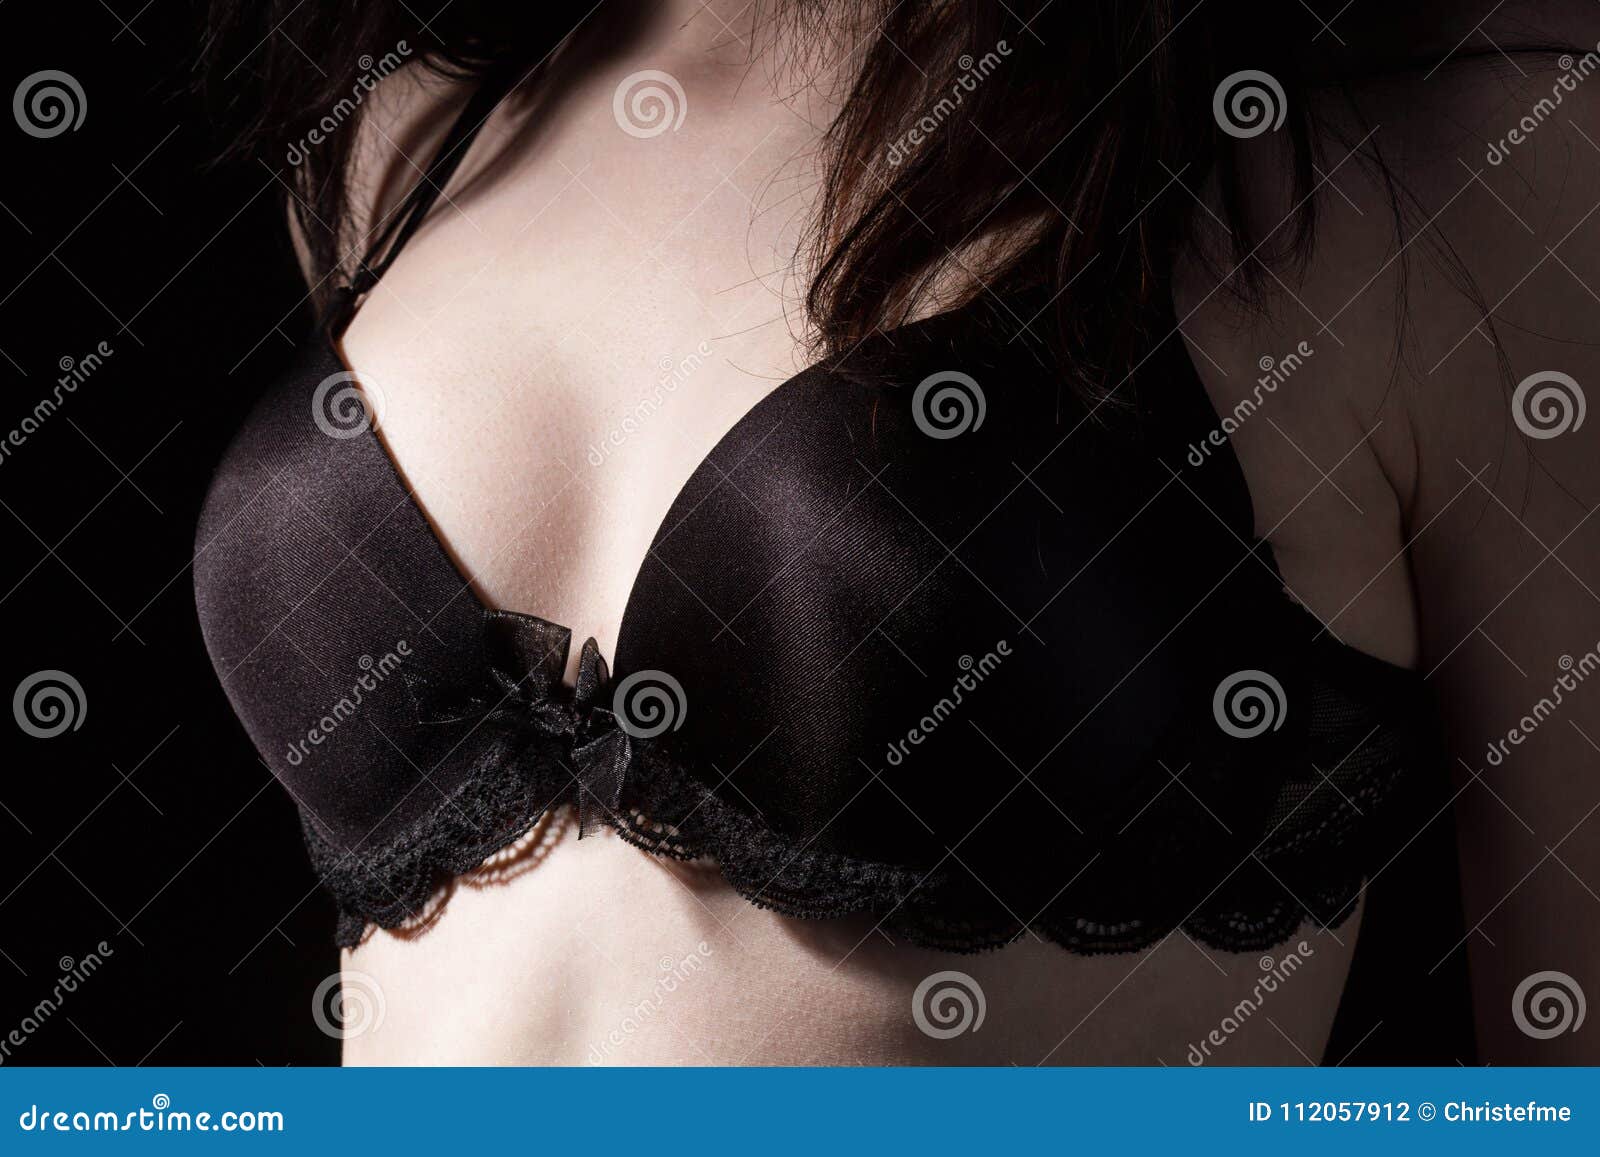 круглая грудь в черном лифчике фото 91